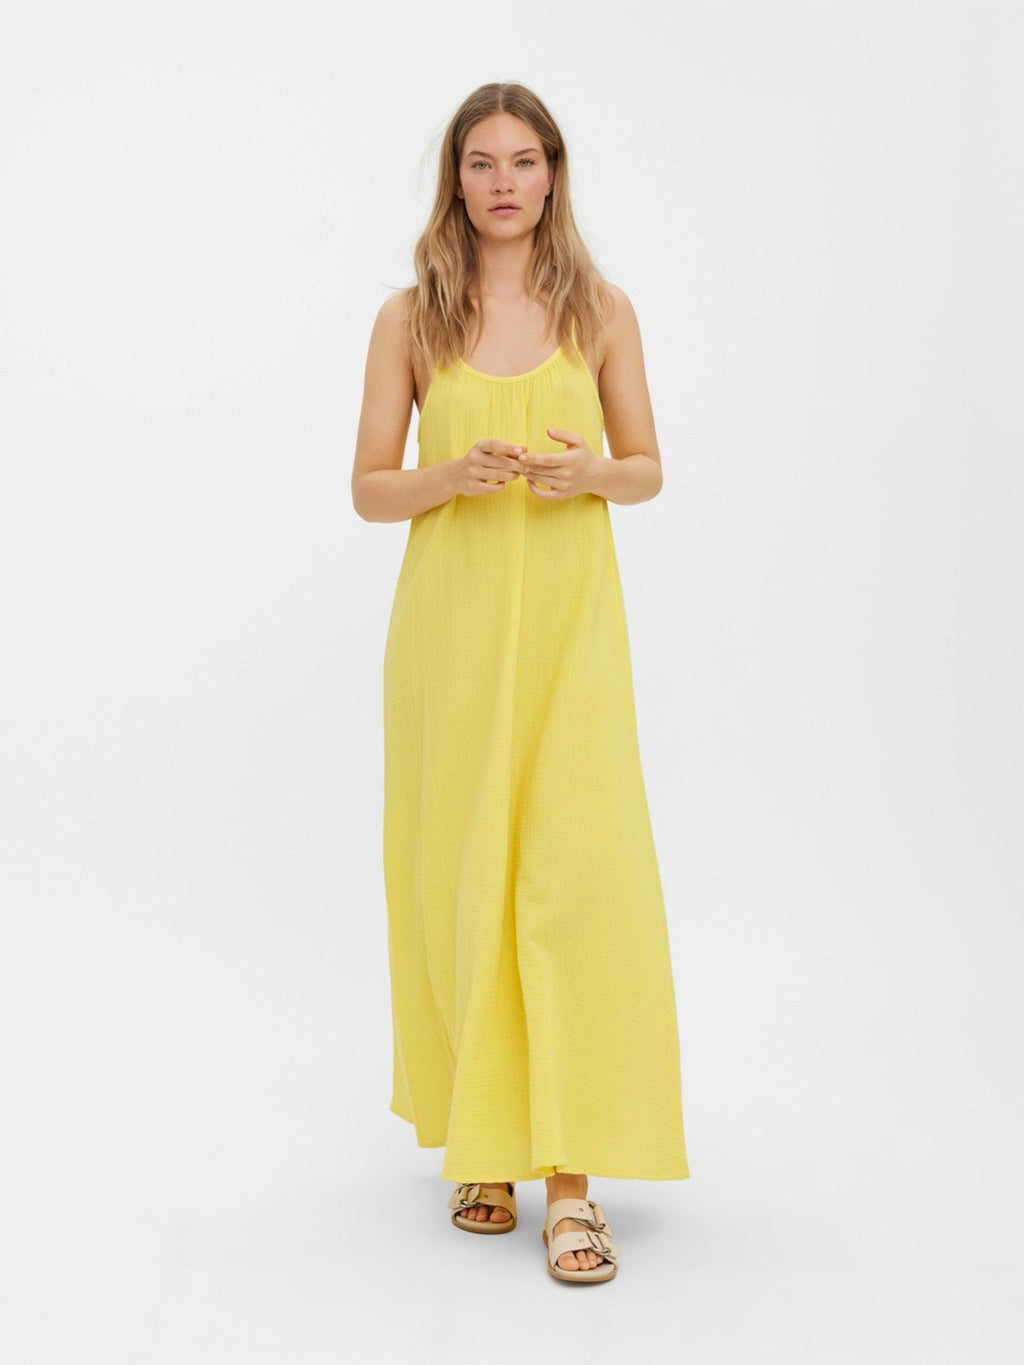 Natali singletna haljina - žuta